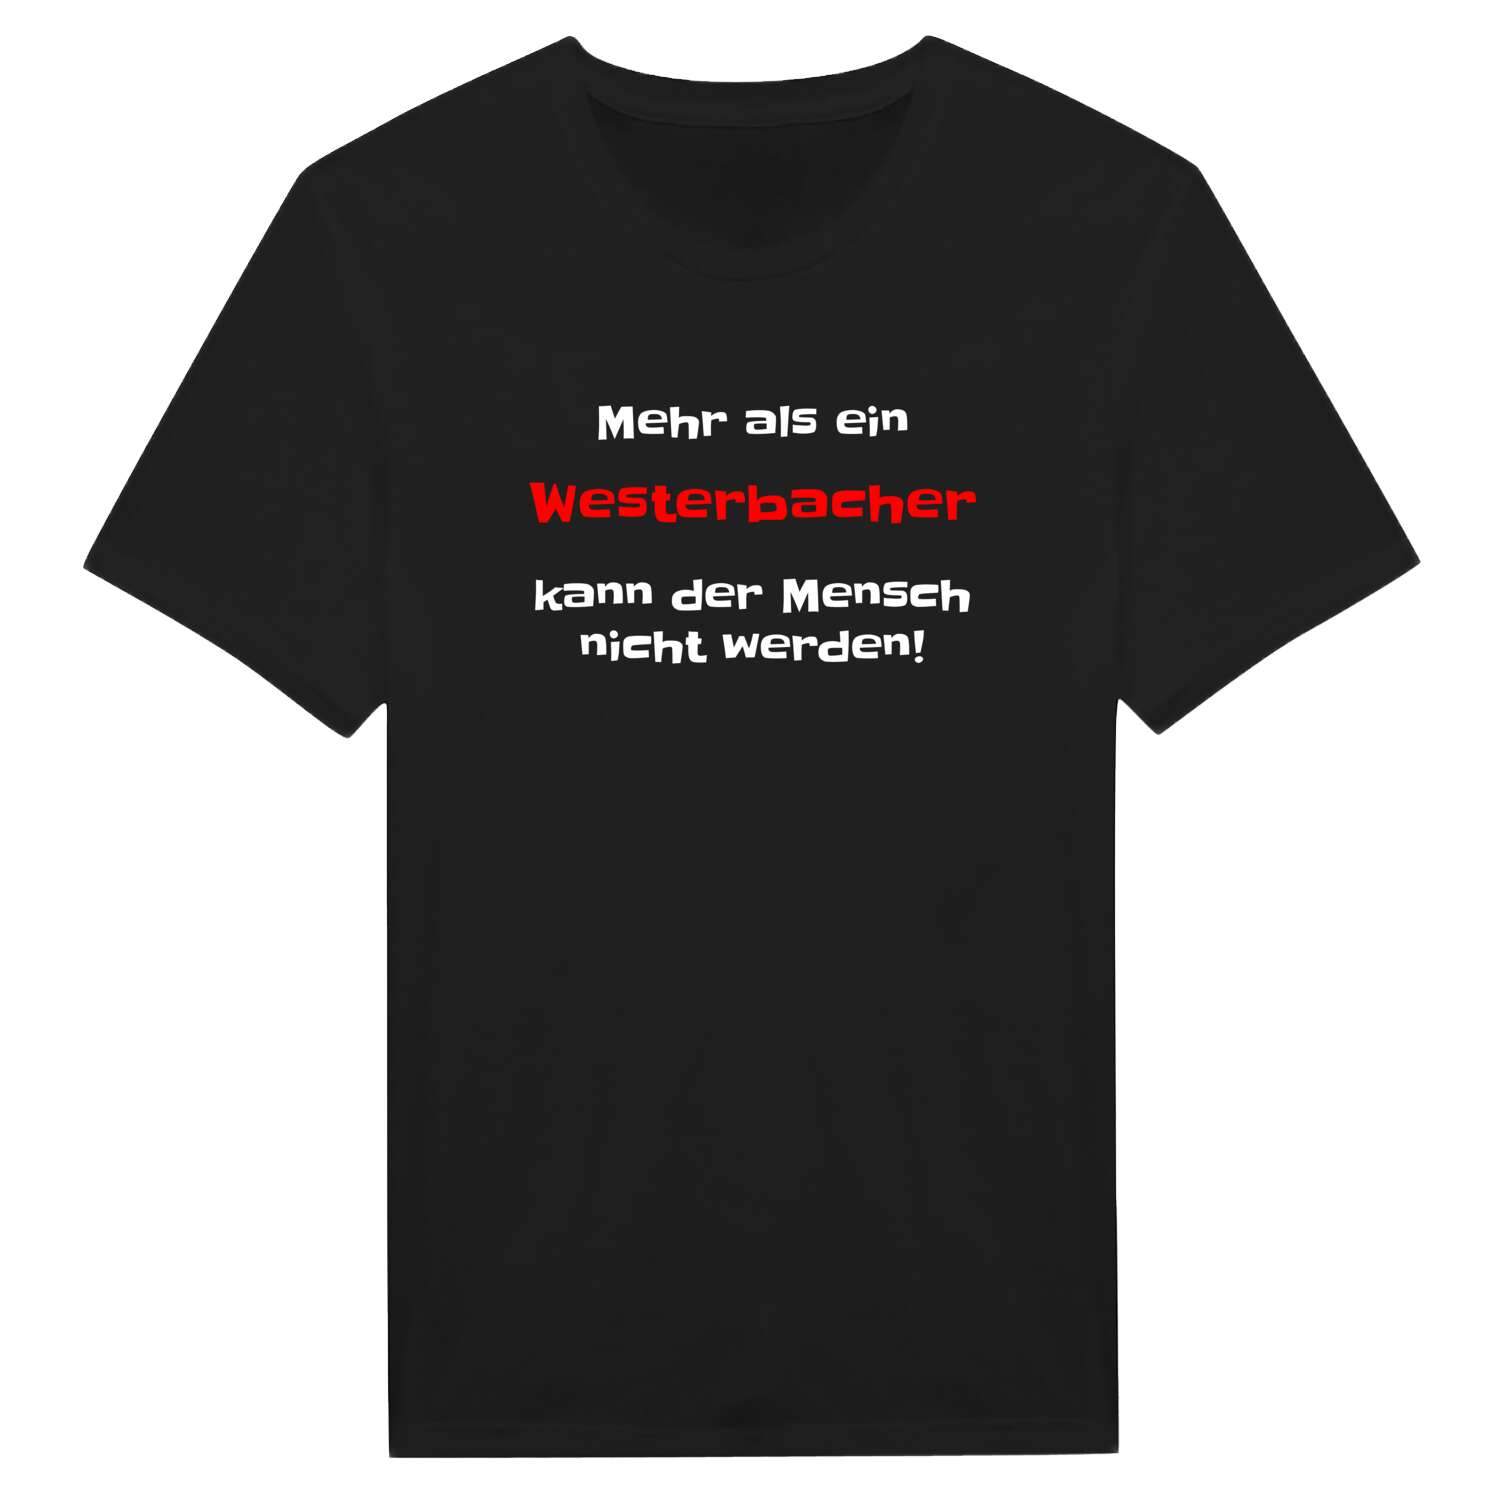 Westerbach T-Shirt »Mehr als ein«